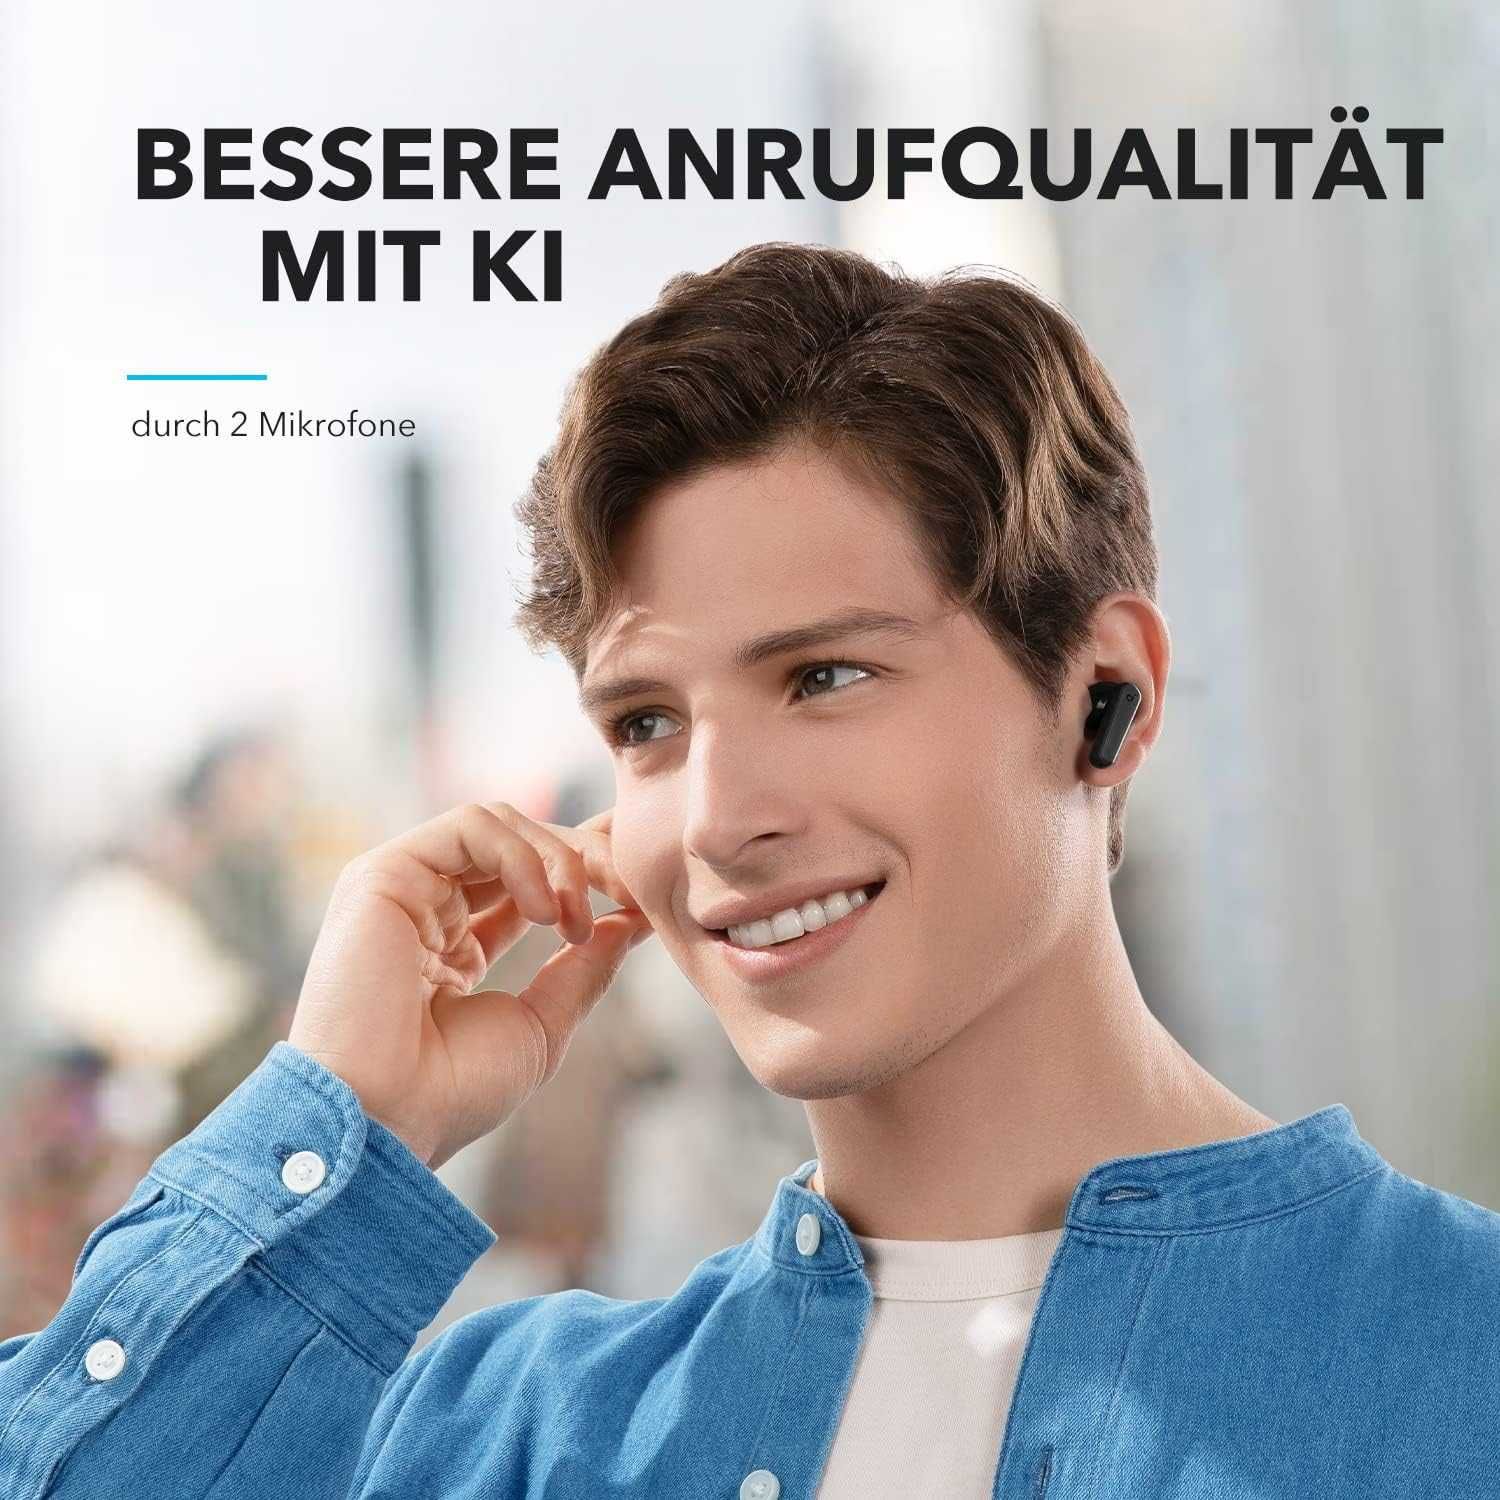 Чисто Нови Безжични Слушалки Anker Soundcore P20i TWS Bluetooth